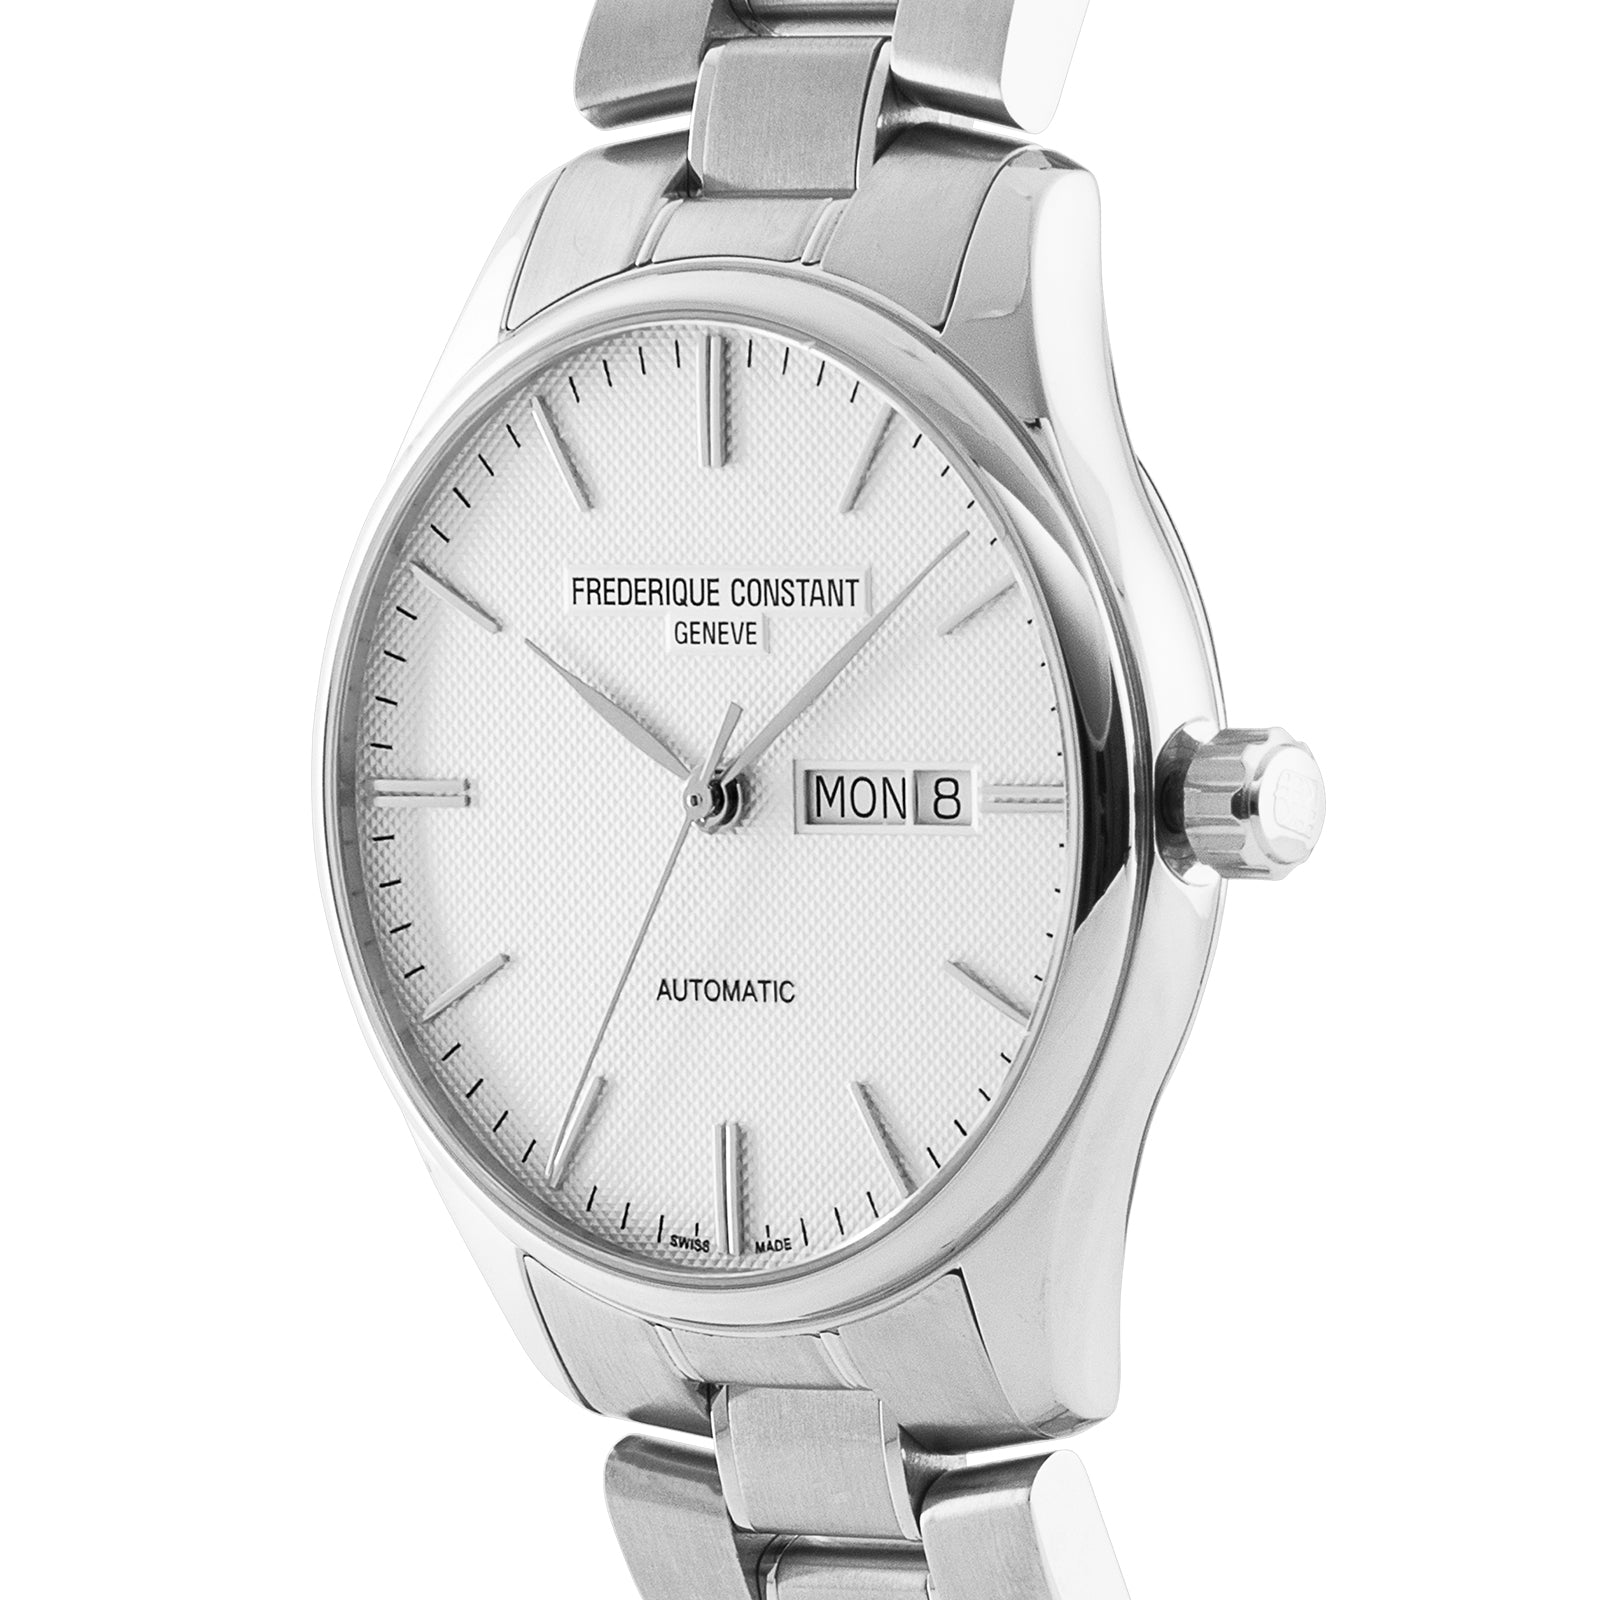 ساعة فريدريك كونستانت الرجالية بحركة كوارتز ولون مينا أبيض - FC-0178+L